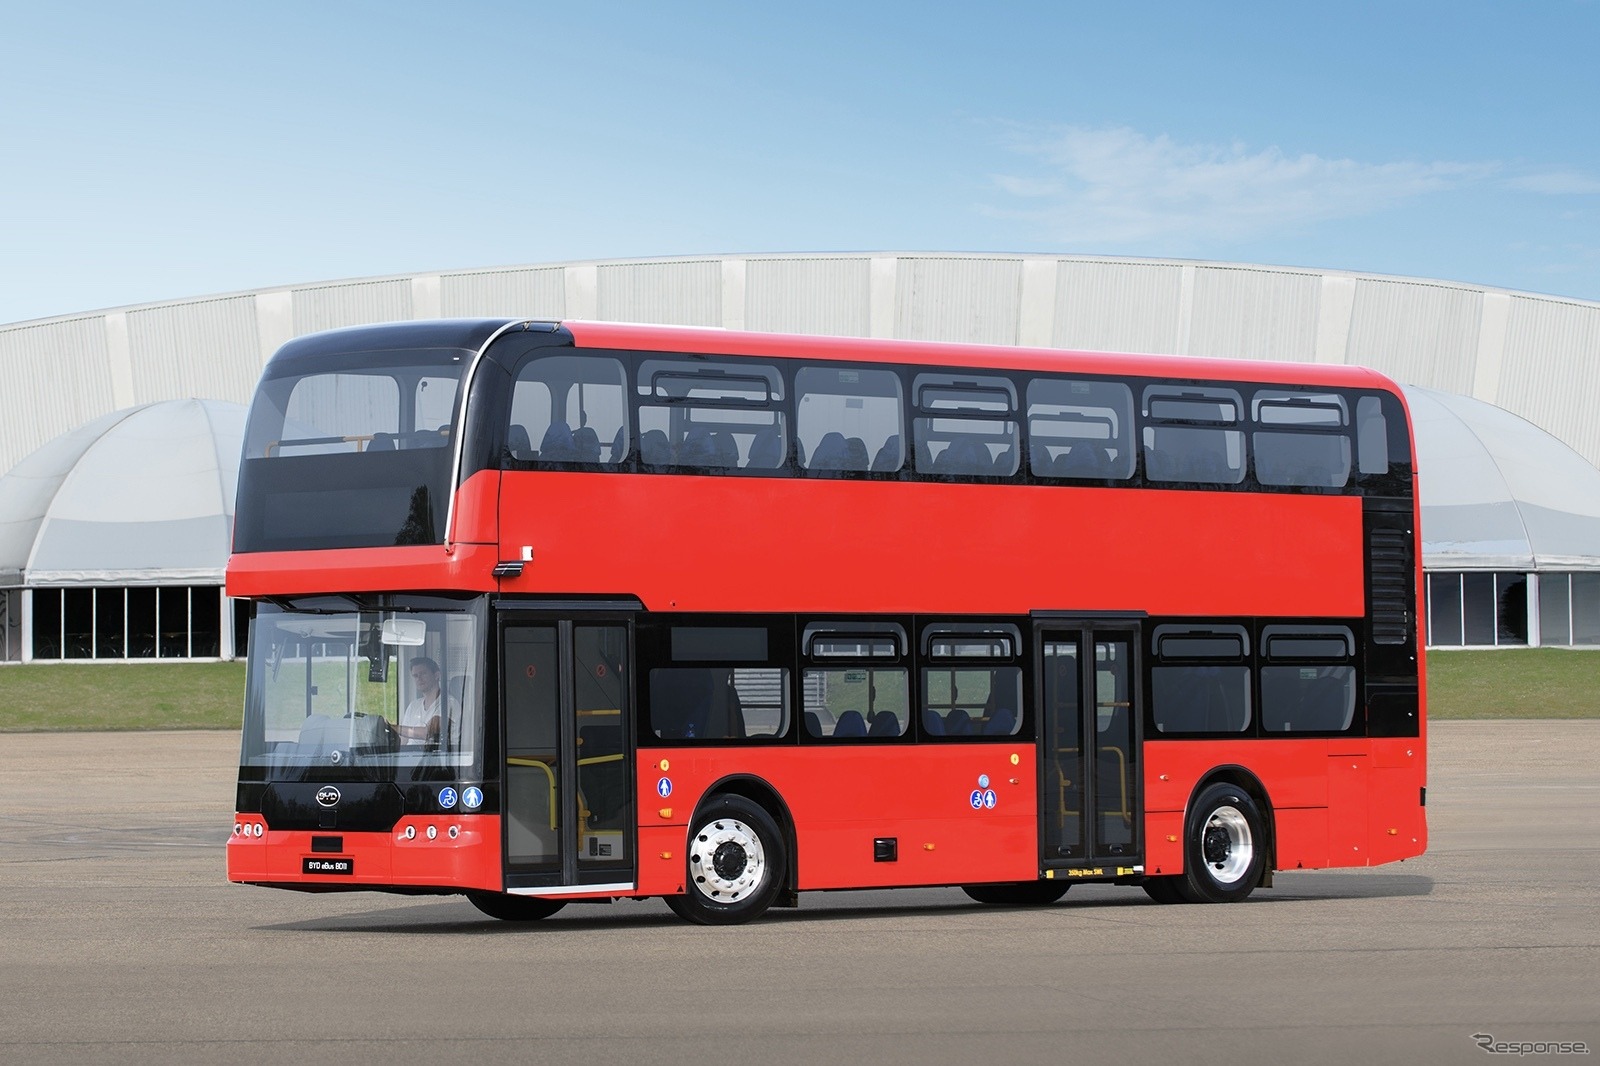 BYDの新型電動2階建てバス『BD11』